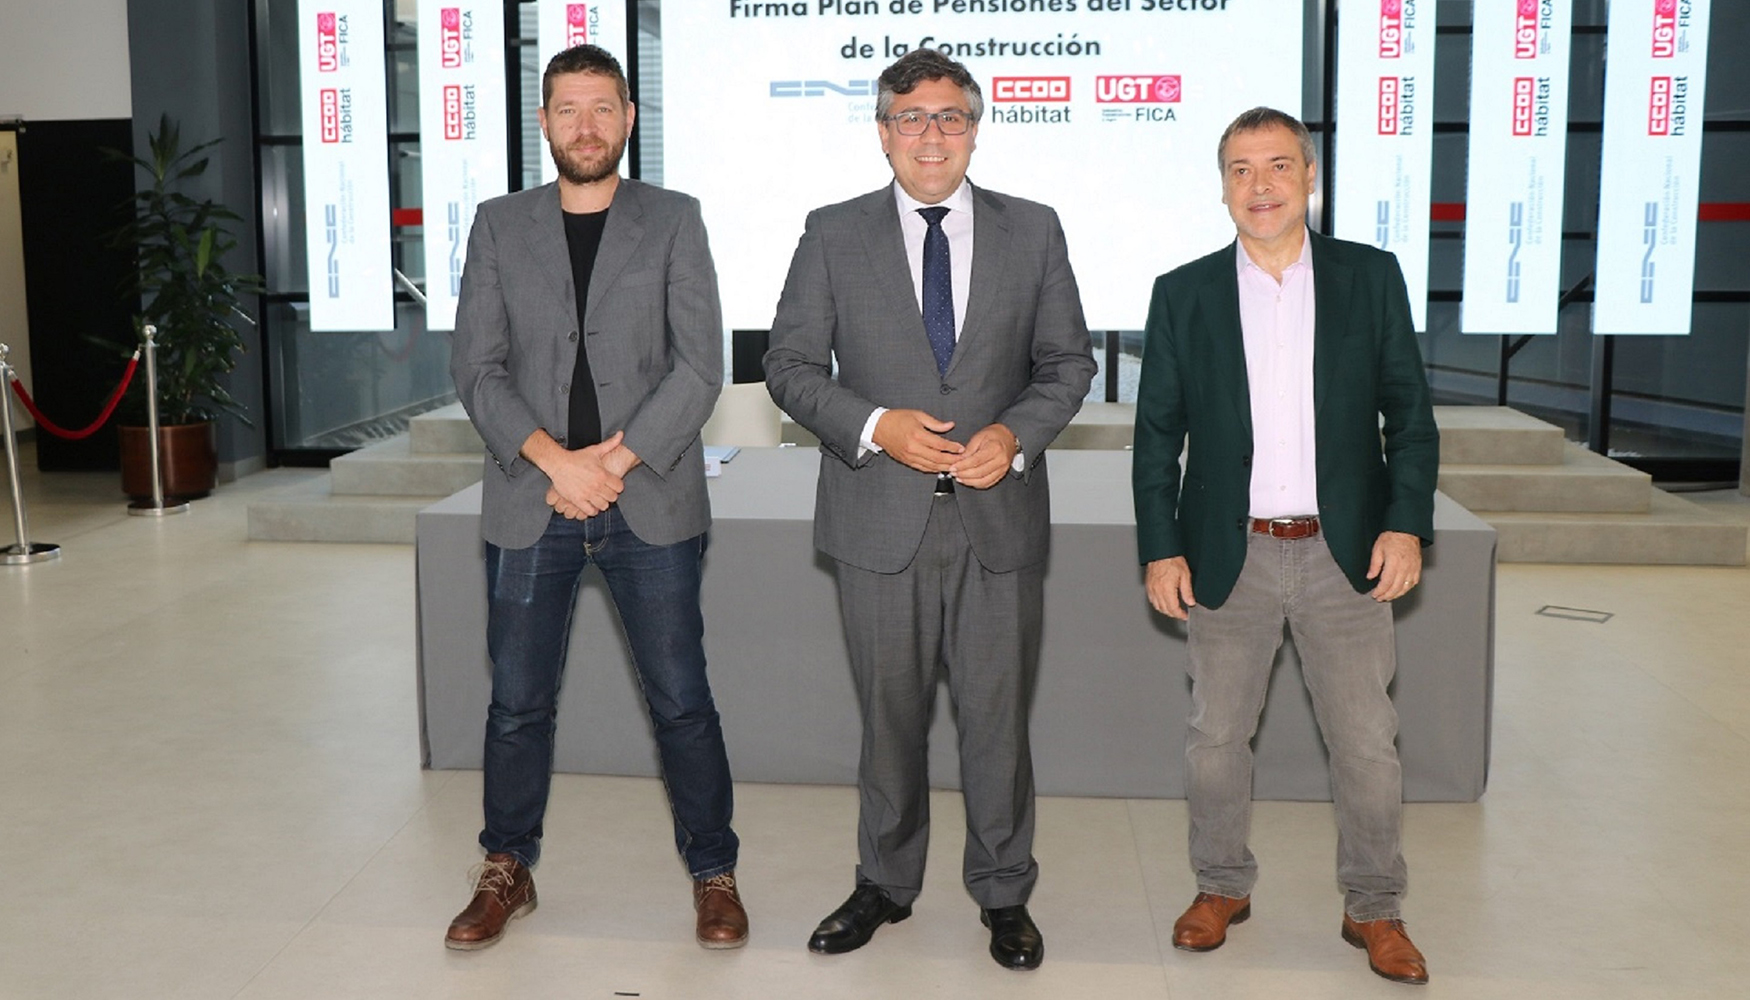 Daniel Barragn Burgui (CCOO del Hbitat), Pedro Fernndez Aln (CNC) y Mariano Hoya Callosa (UGT FICA)...